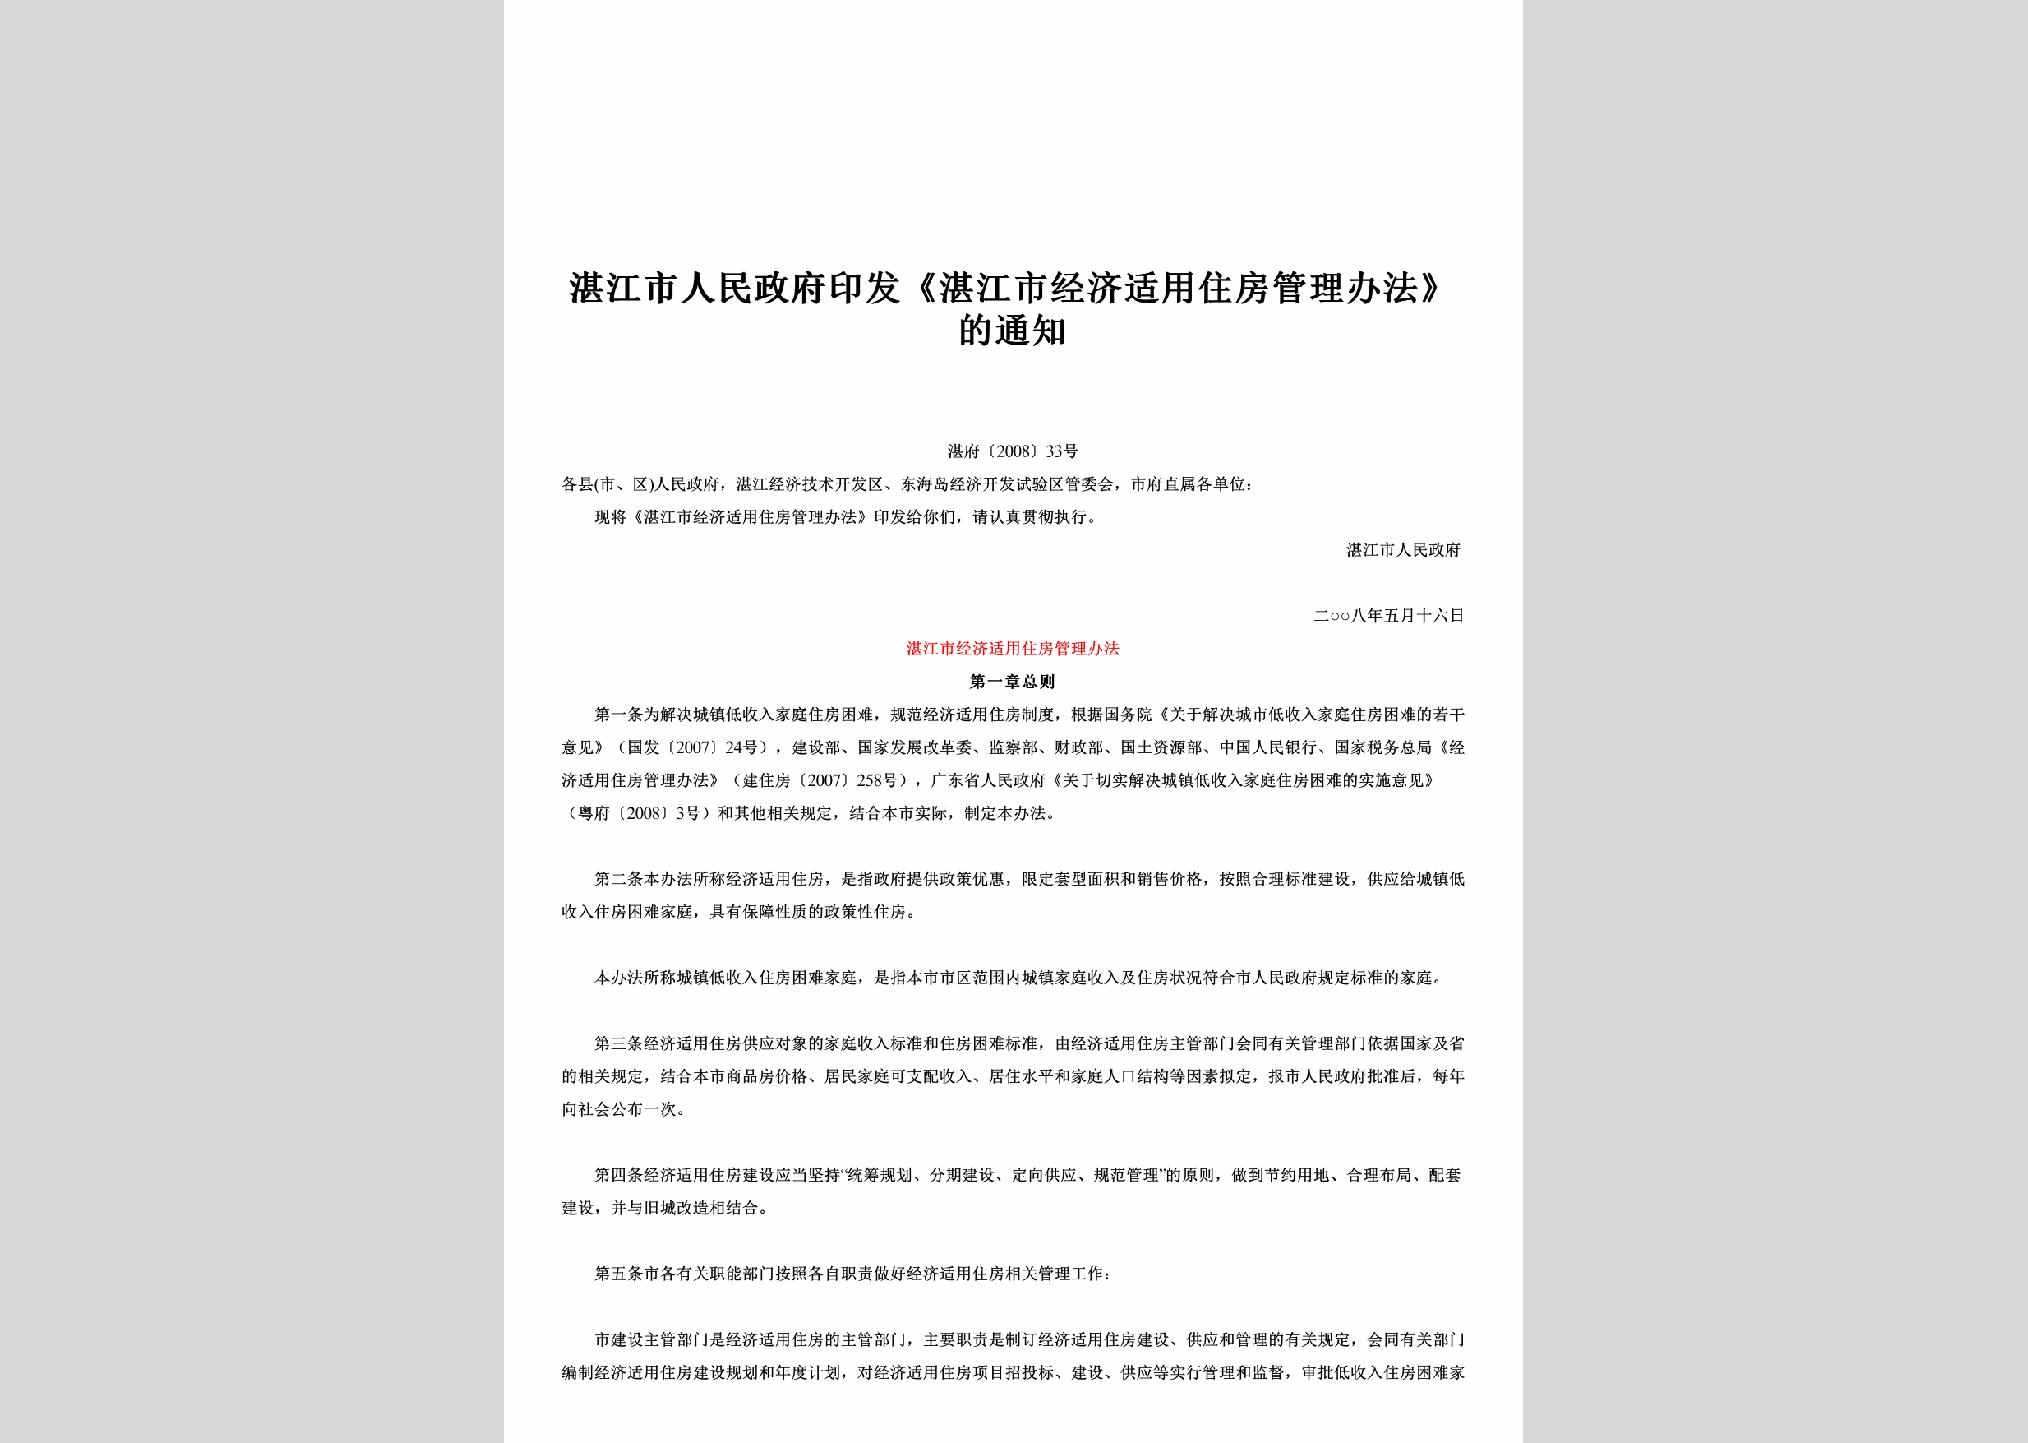 湛府[2008]33号：印发《湛江市经济适用住房管理办法》的通知